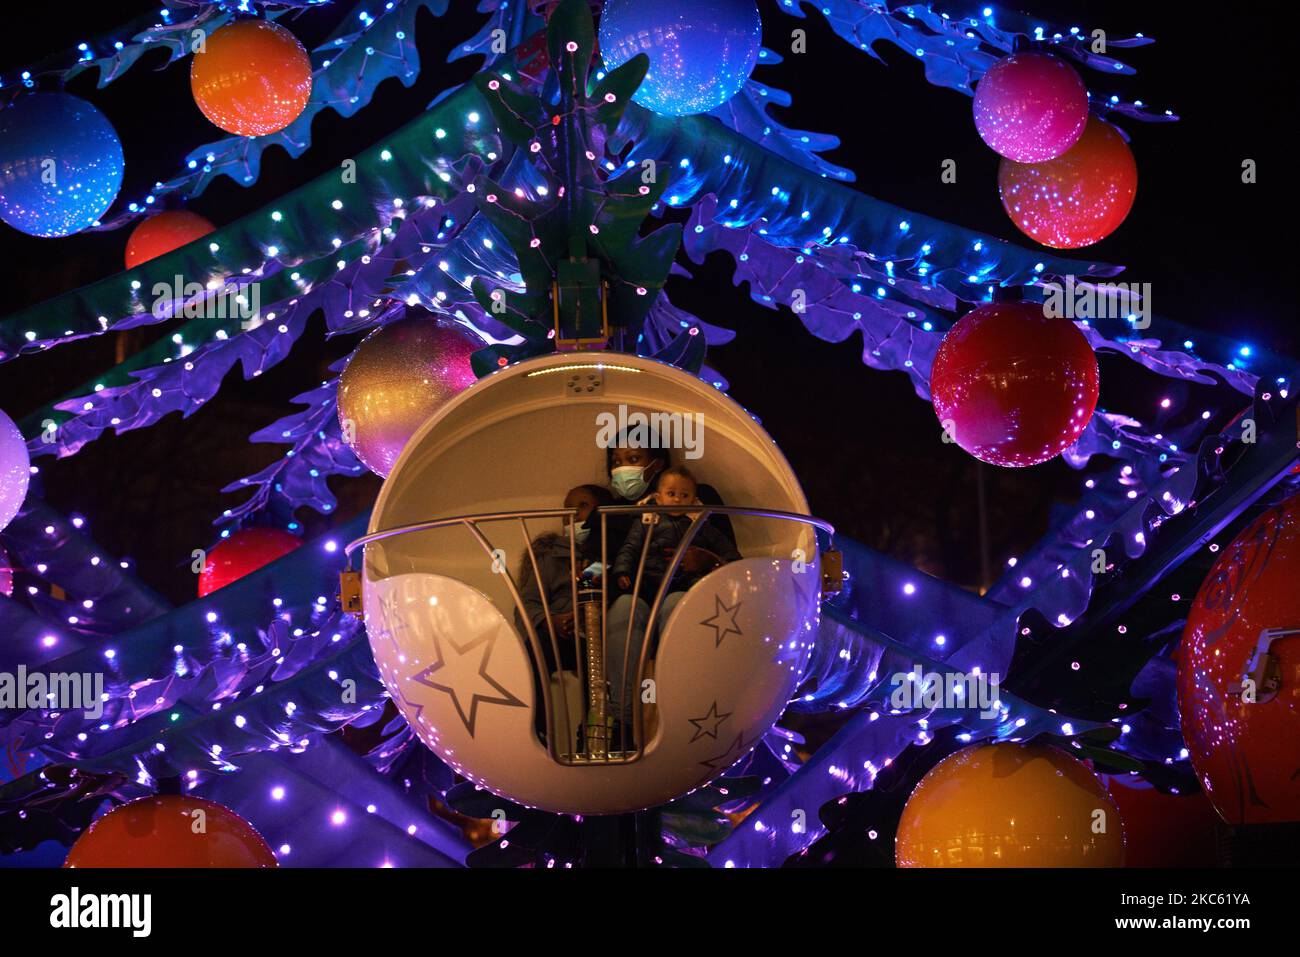 Una mujer con niños está en un alegre-go-alrededor como un árbol gigante de Navidad. A pesar de la pandemia de Covid-19 y antes del toque de queda a las 8pm, la gente disfruta de decoraciones navideñas e ir de compras en tiendas decoradas para Navidad. El ayuntamiento de toulouse, el Capitolio y la plaza del Capitolio están decorados e iluminados. Toulouse. Francia. Diciembre 16th 2020 (Foto de Alain Pitton/NurPhoto) Foto de stock